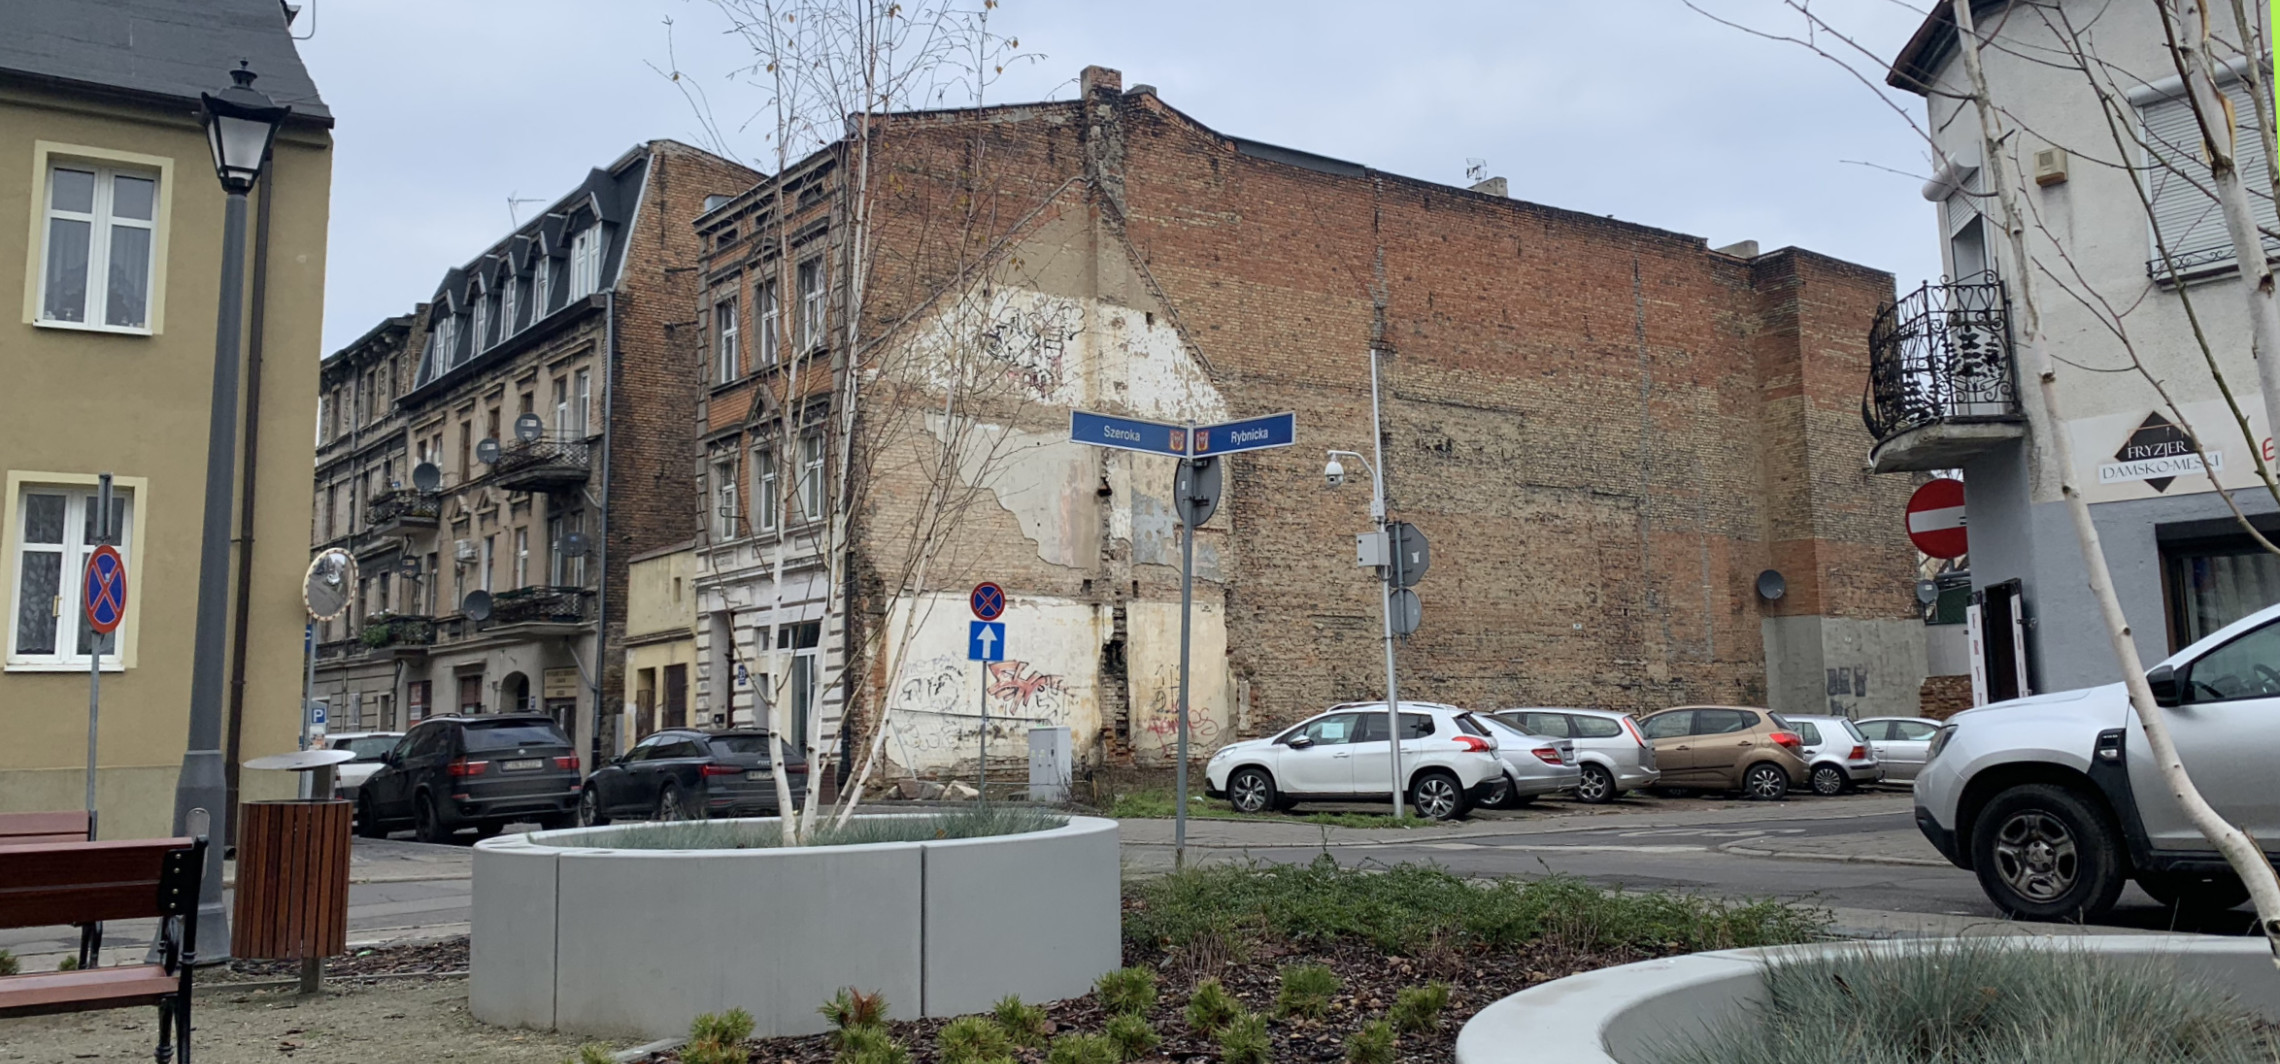 Inowrocław - Budować plomby, czy tworzyć skwery? Radny pyta o politykę przestrzenną w centrum